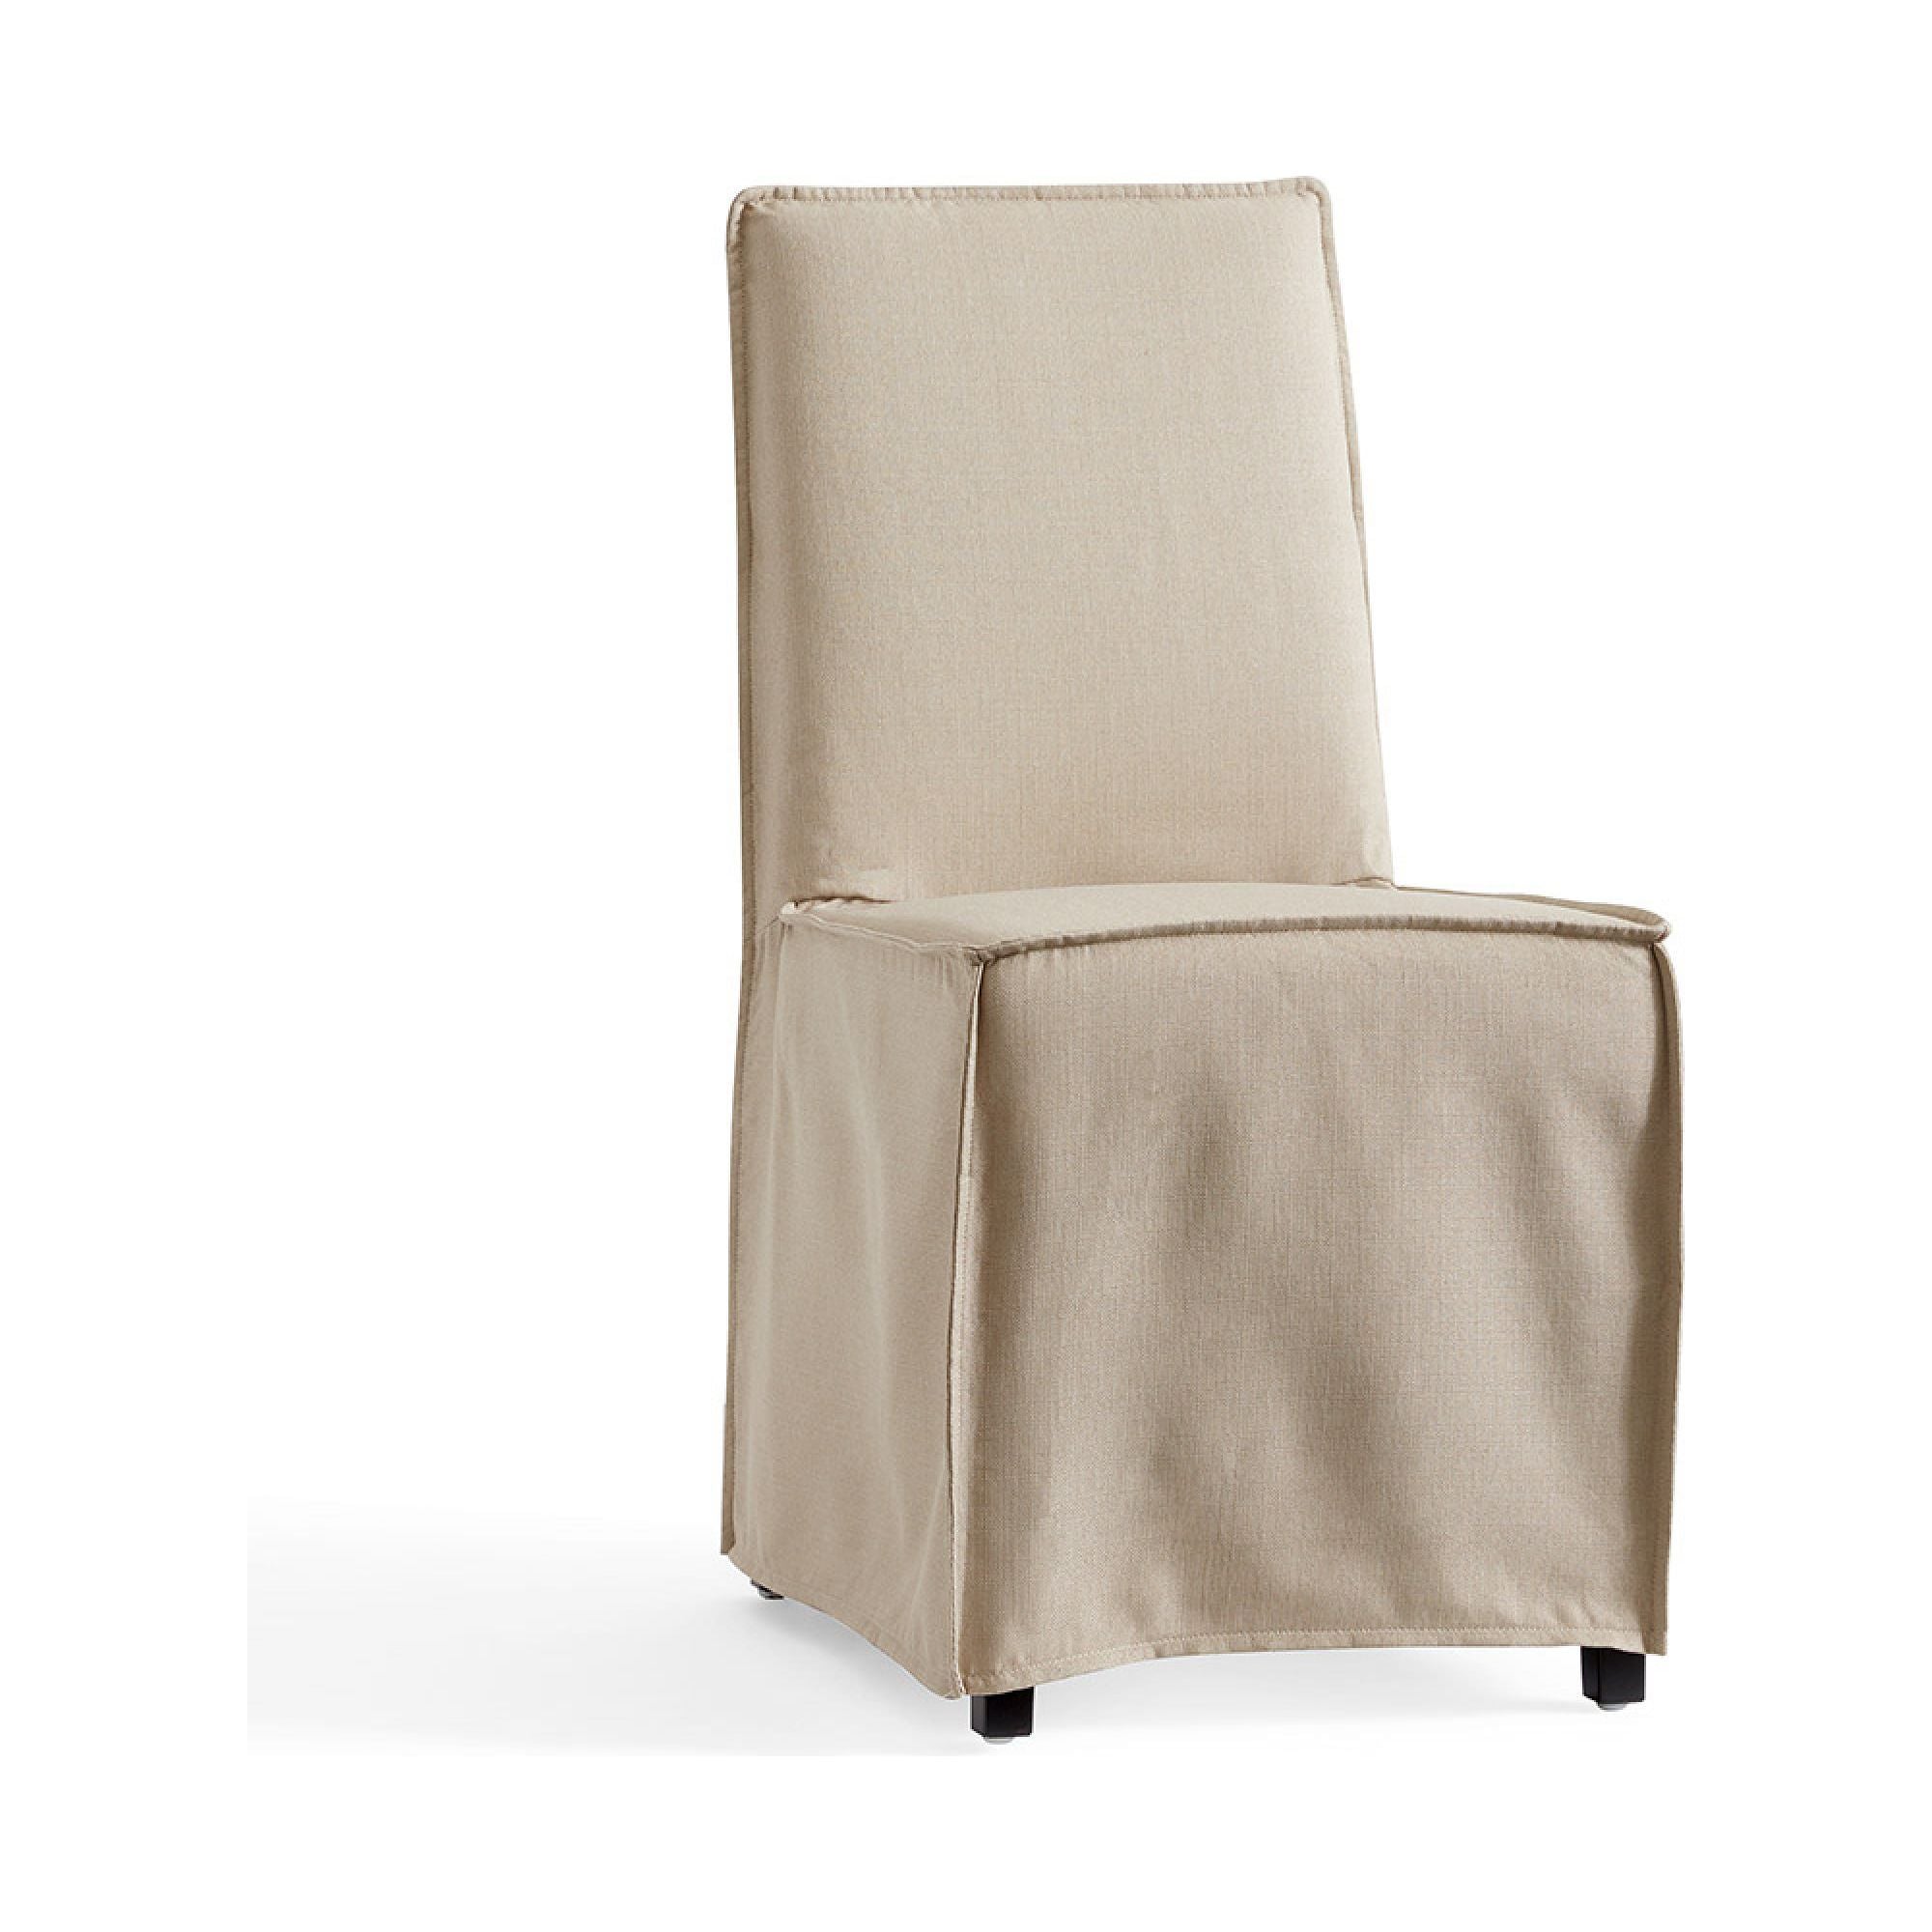 Pottery Barn Carissa Chair Slip Cover -  Natural - Dollars and Sense